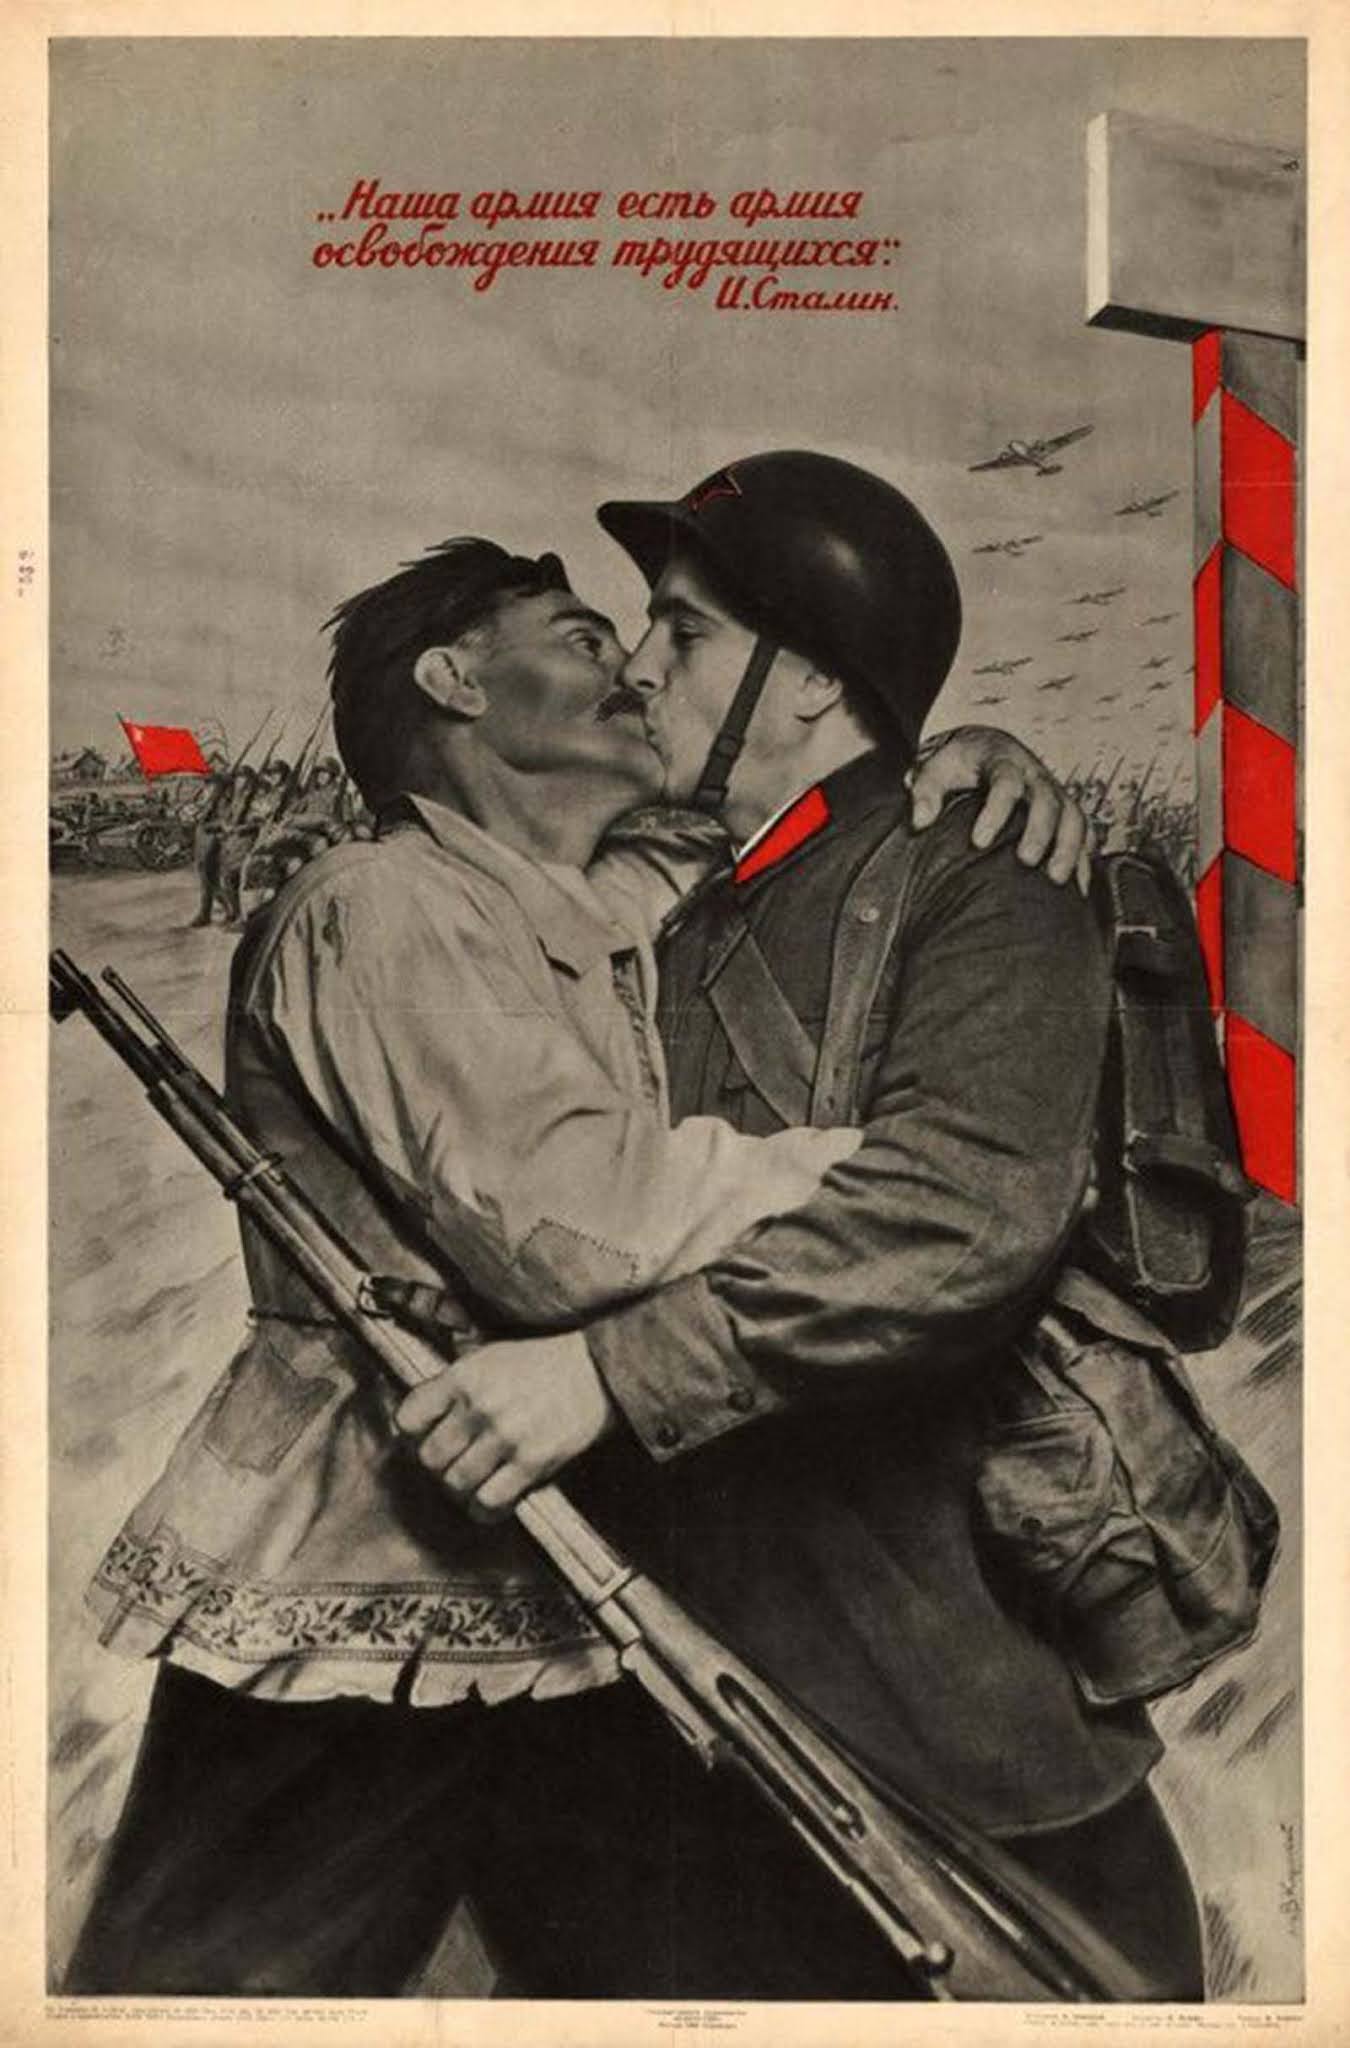 Les affiches de propagande communiste sino-soviétique involontairement homoérotiques, 1950-1960